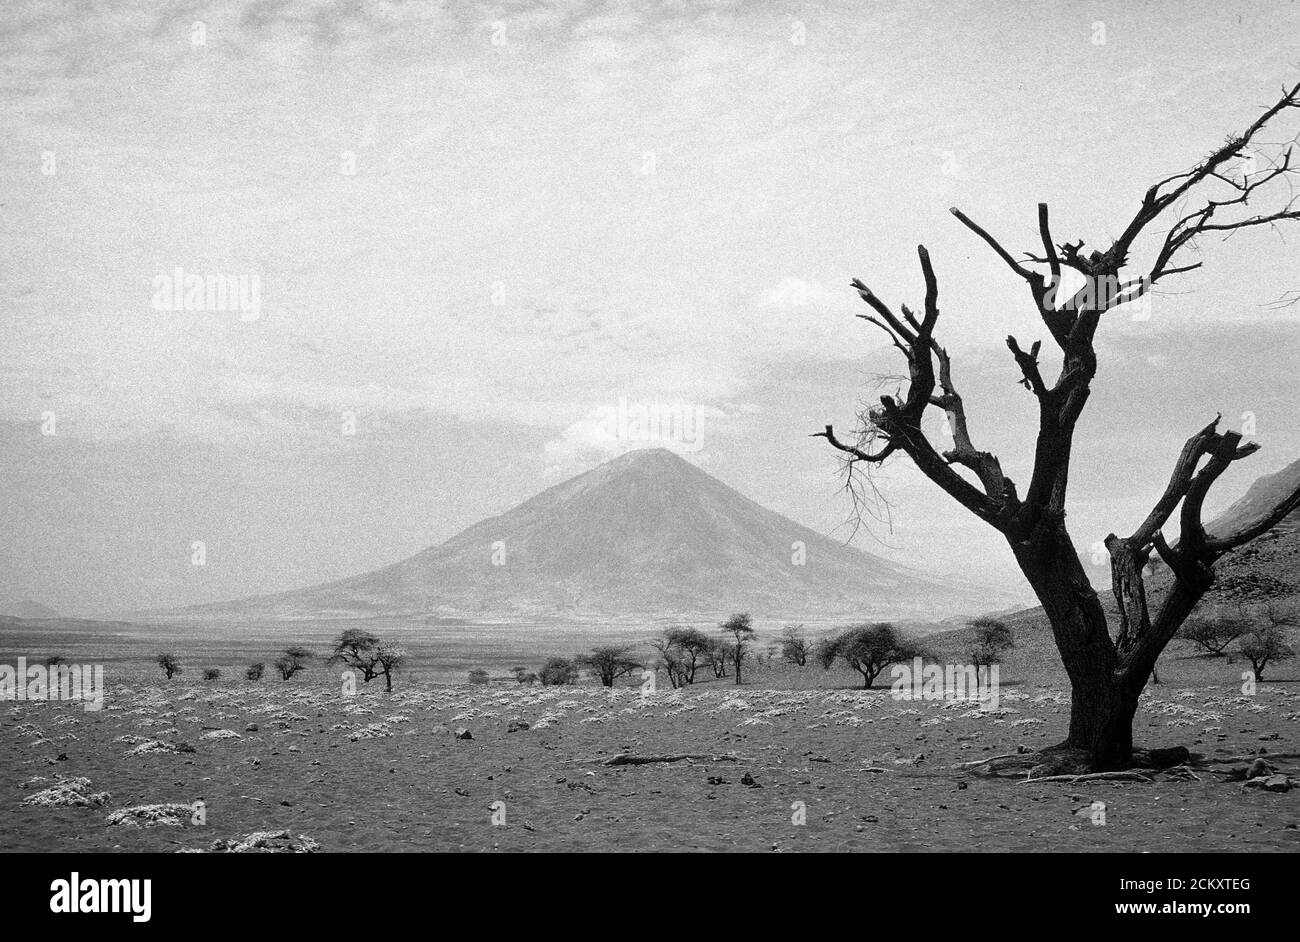 Immagine monocromatica di OL Doinyo Lengai, un vulcano attivo nella Great Rift Valley, Tanzania. Foto Stock